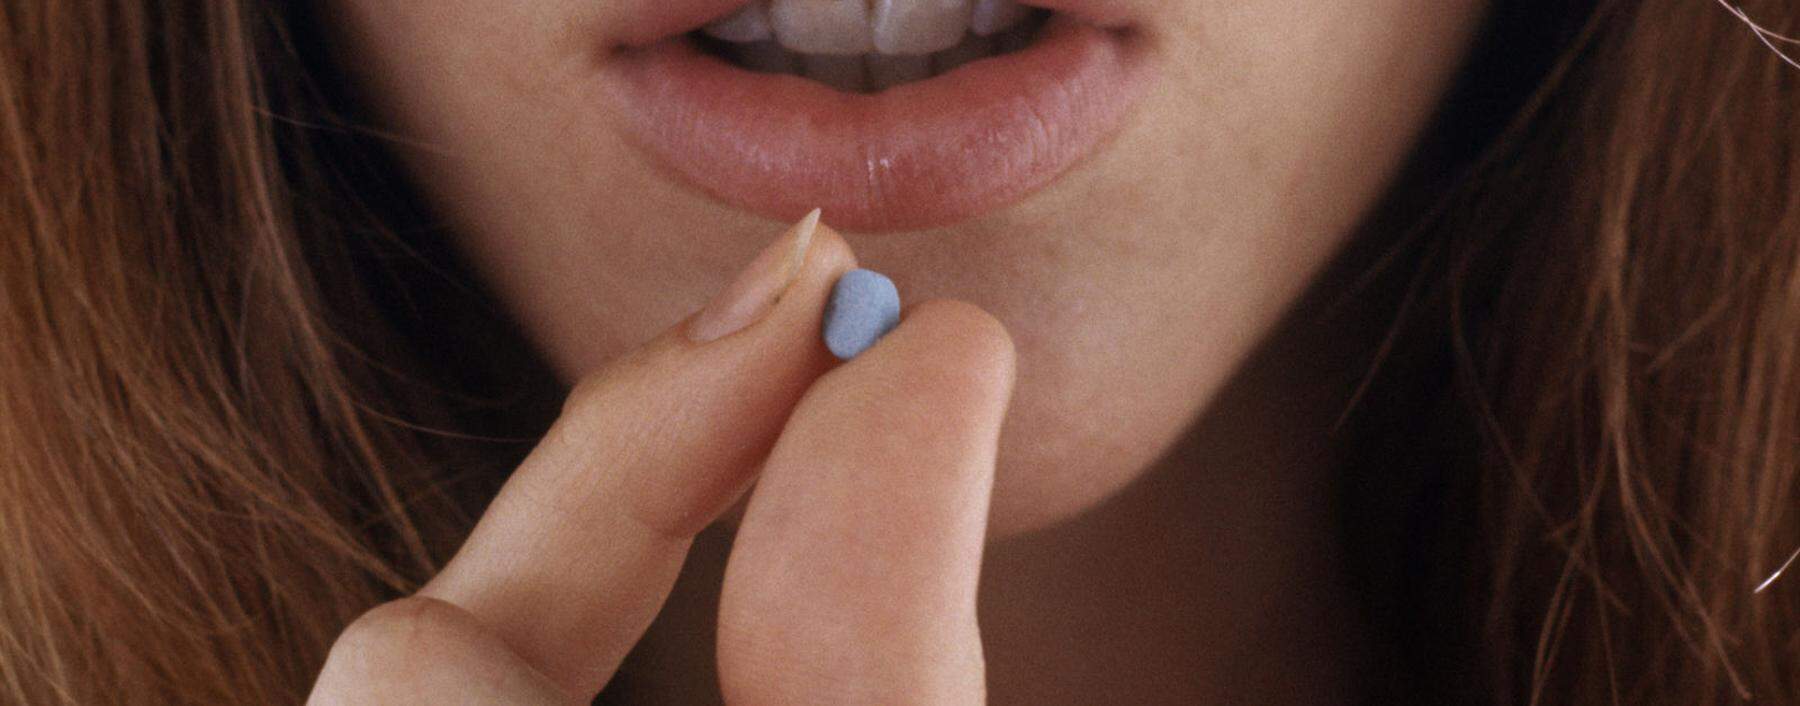 Viele Mythen um die Pille werden heute richtiggestellt.